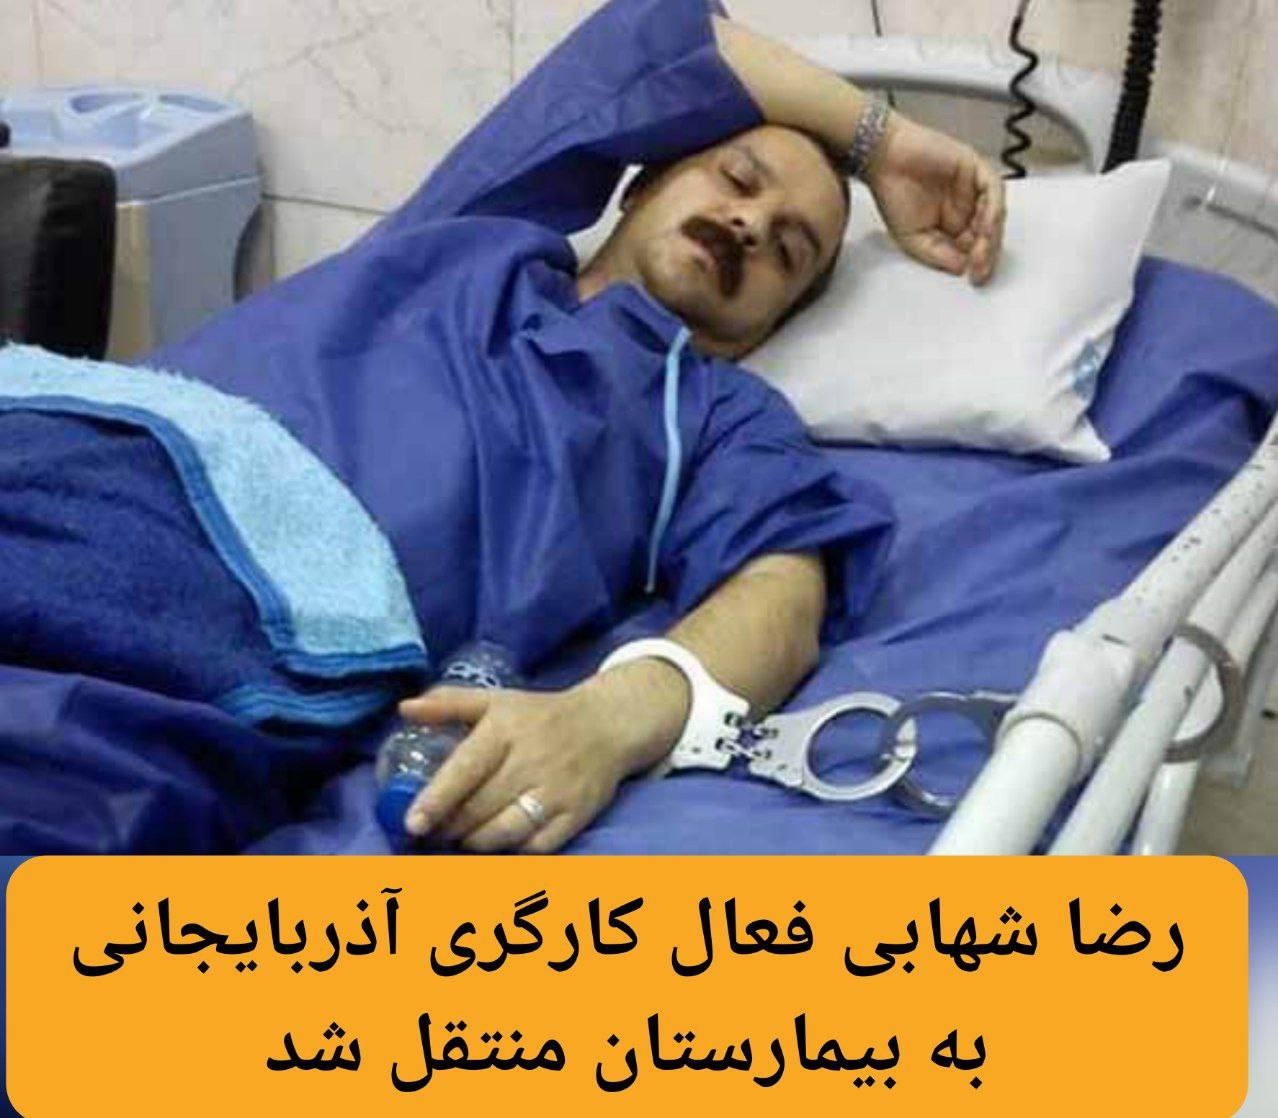 رضا شهابی فعال کارگری آذربایجانی به بیمارستان منتقل شد